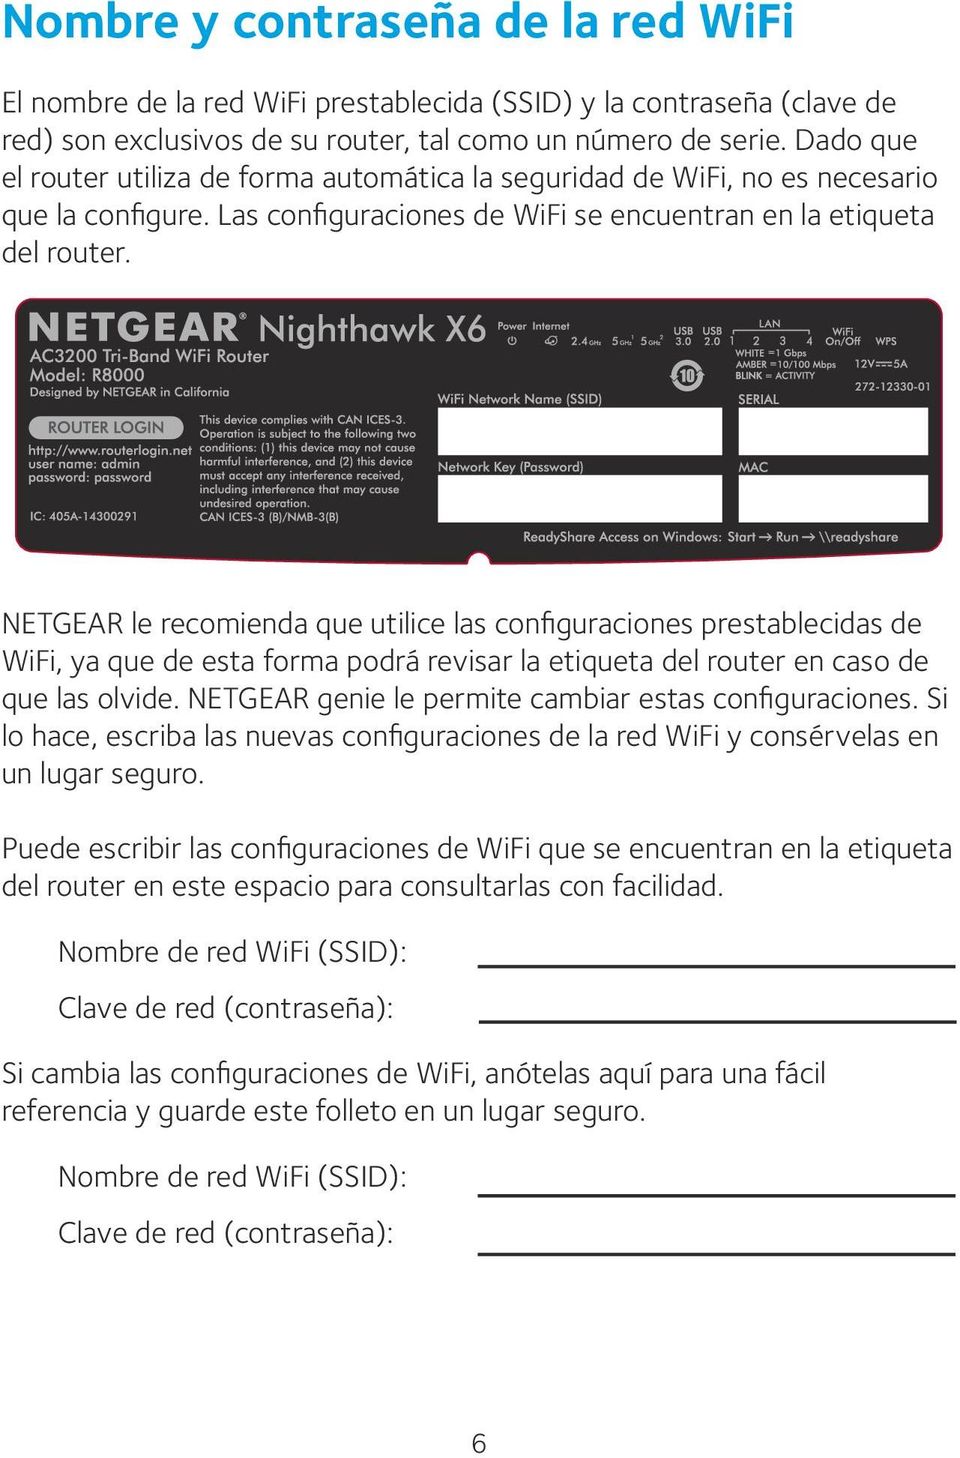 NETGEAR le recomienda que utilice las configuraciones prestablecidas de WiFi, ya que de esta forma podrá revisar la etiqueta del router en caso de que las olvide.